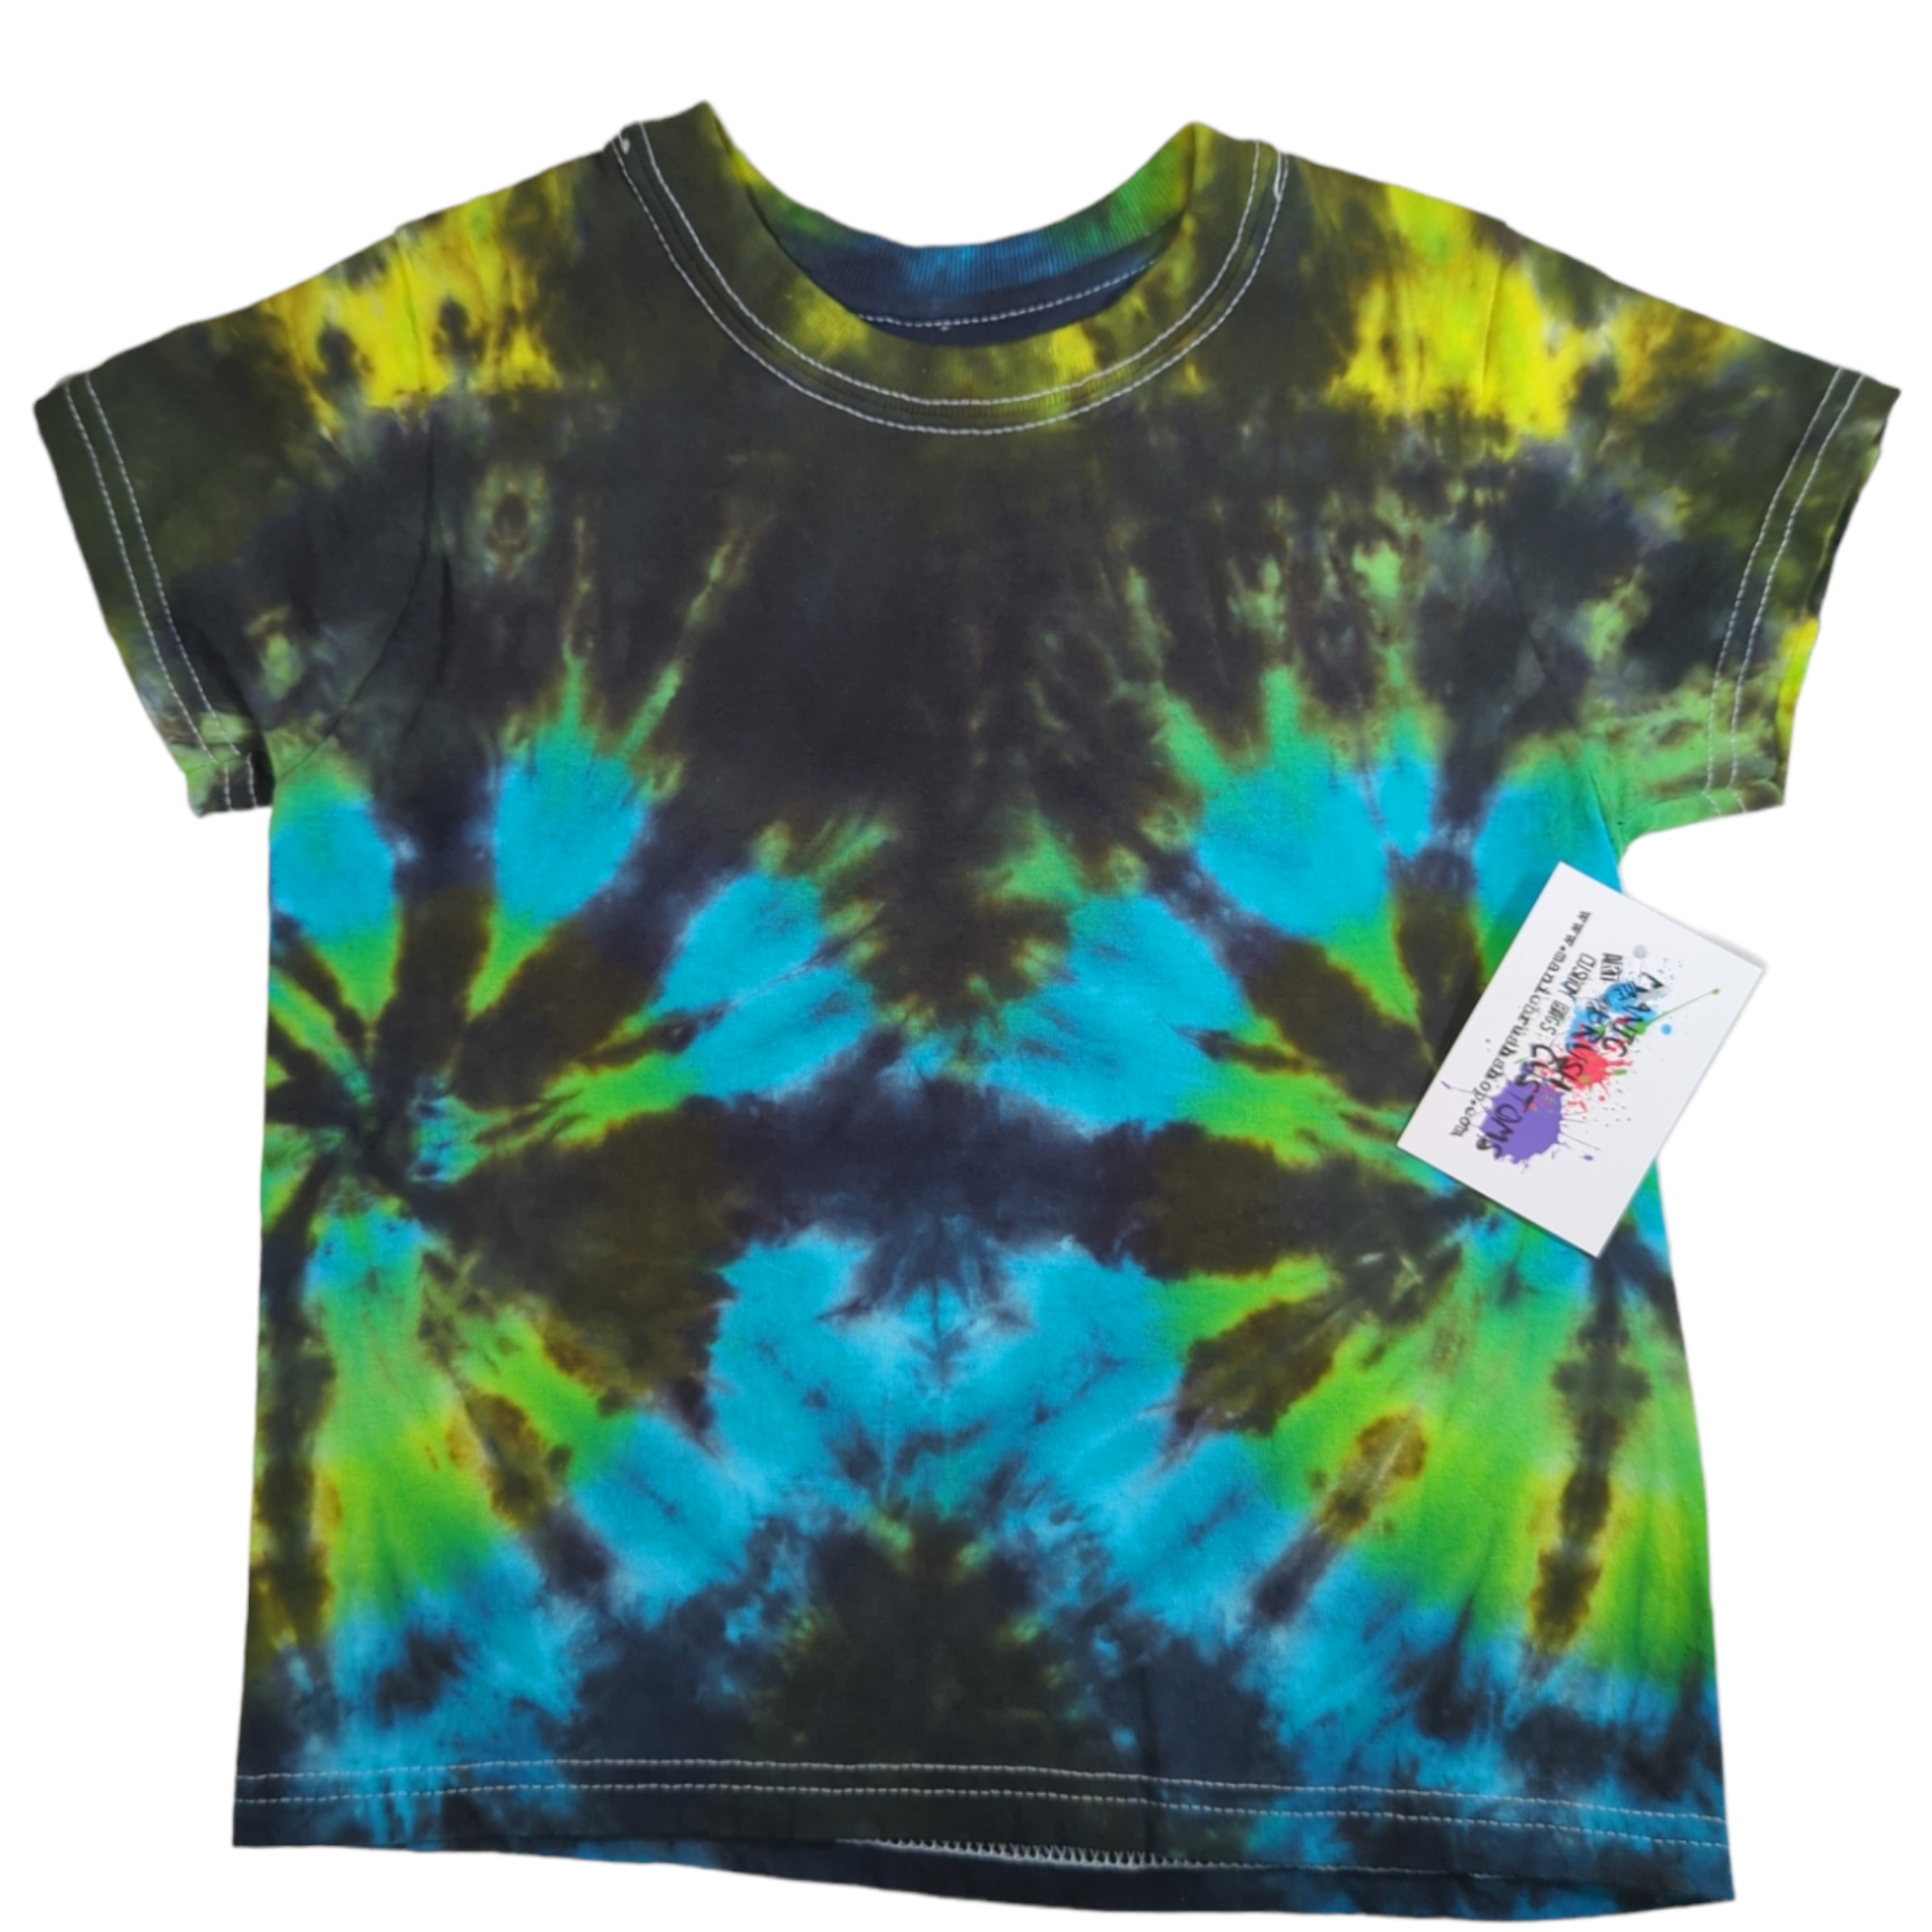 Kids Double Spiral Tie Dye T-shirt XS